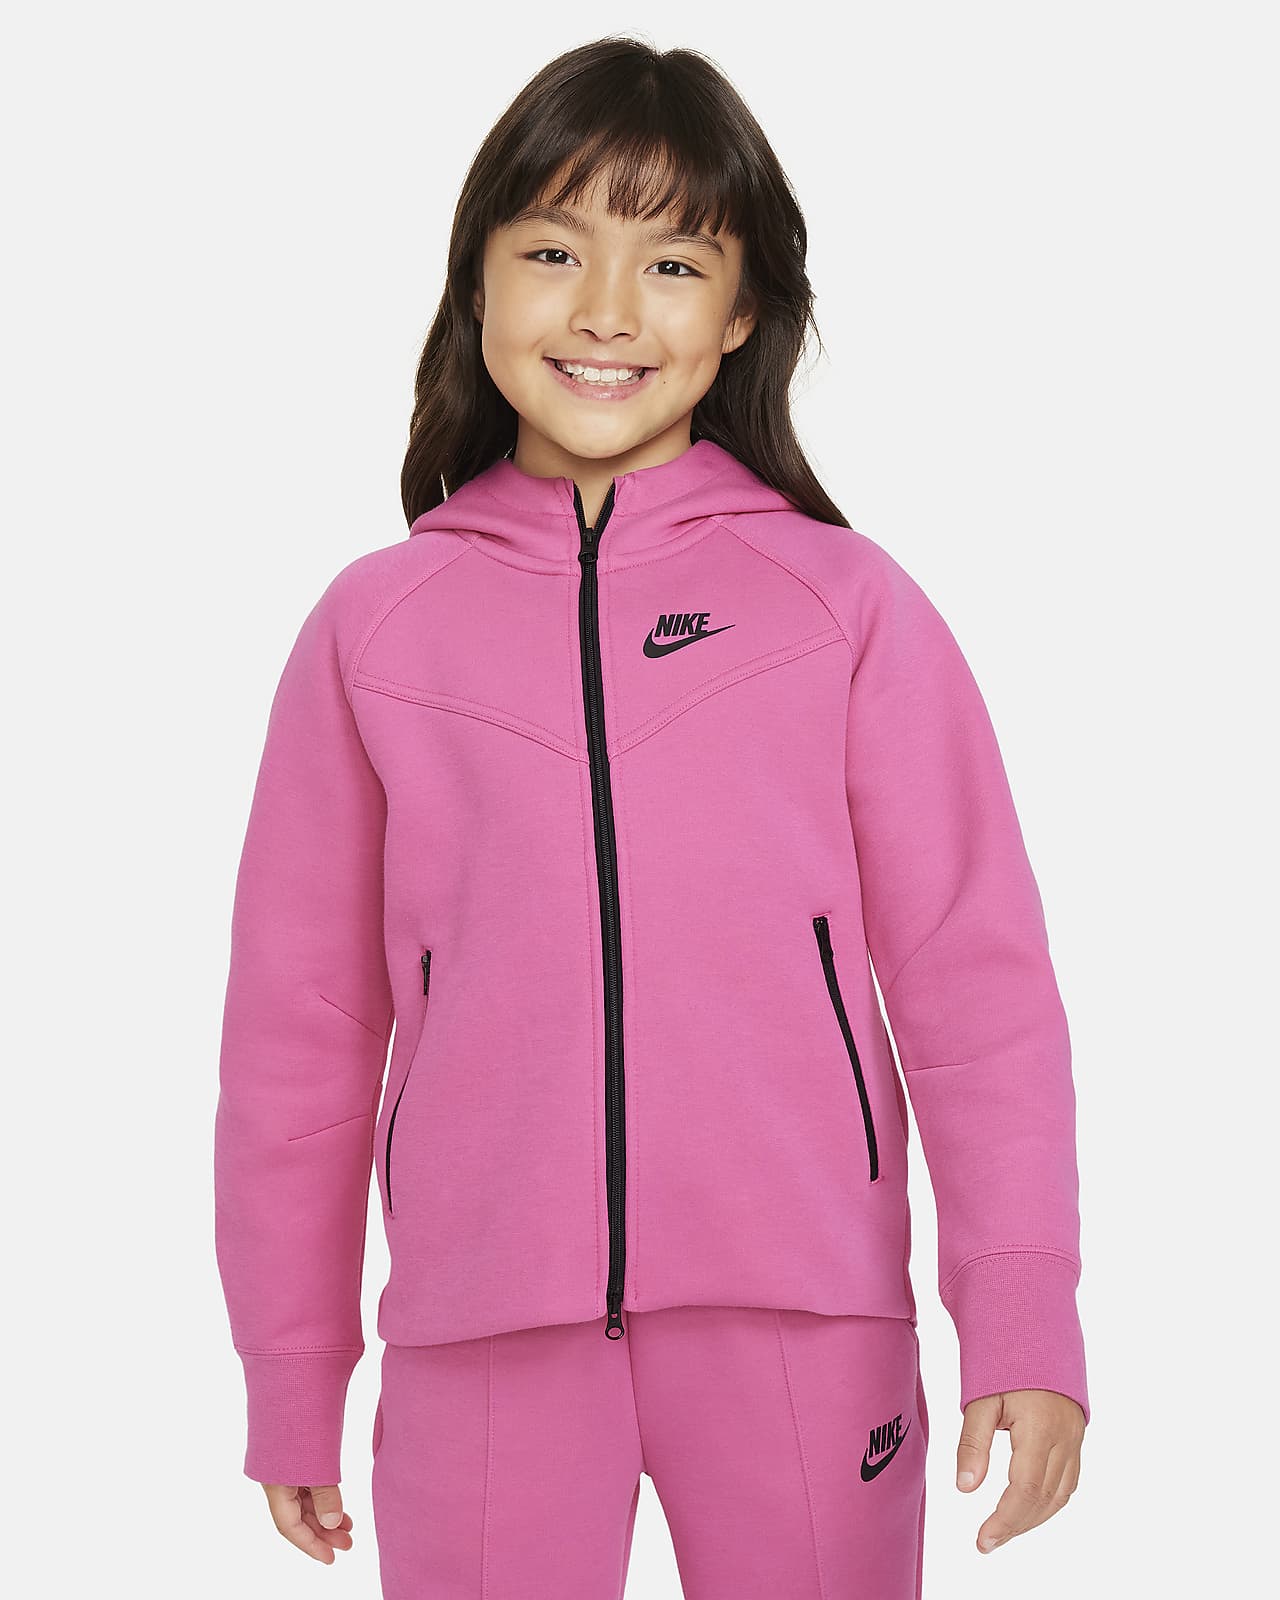 Μπλούζα με κουκούλα και φερμουάρ σε όλο το μήκος Nike Sportswear Tech Fleece για μεγάλα κορίτσια